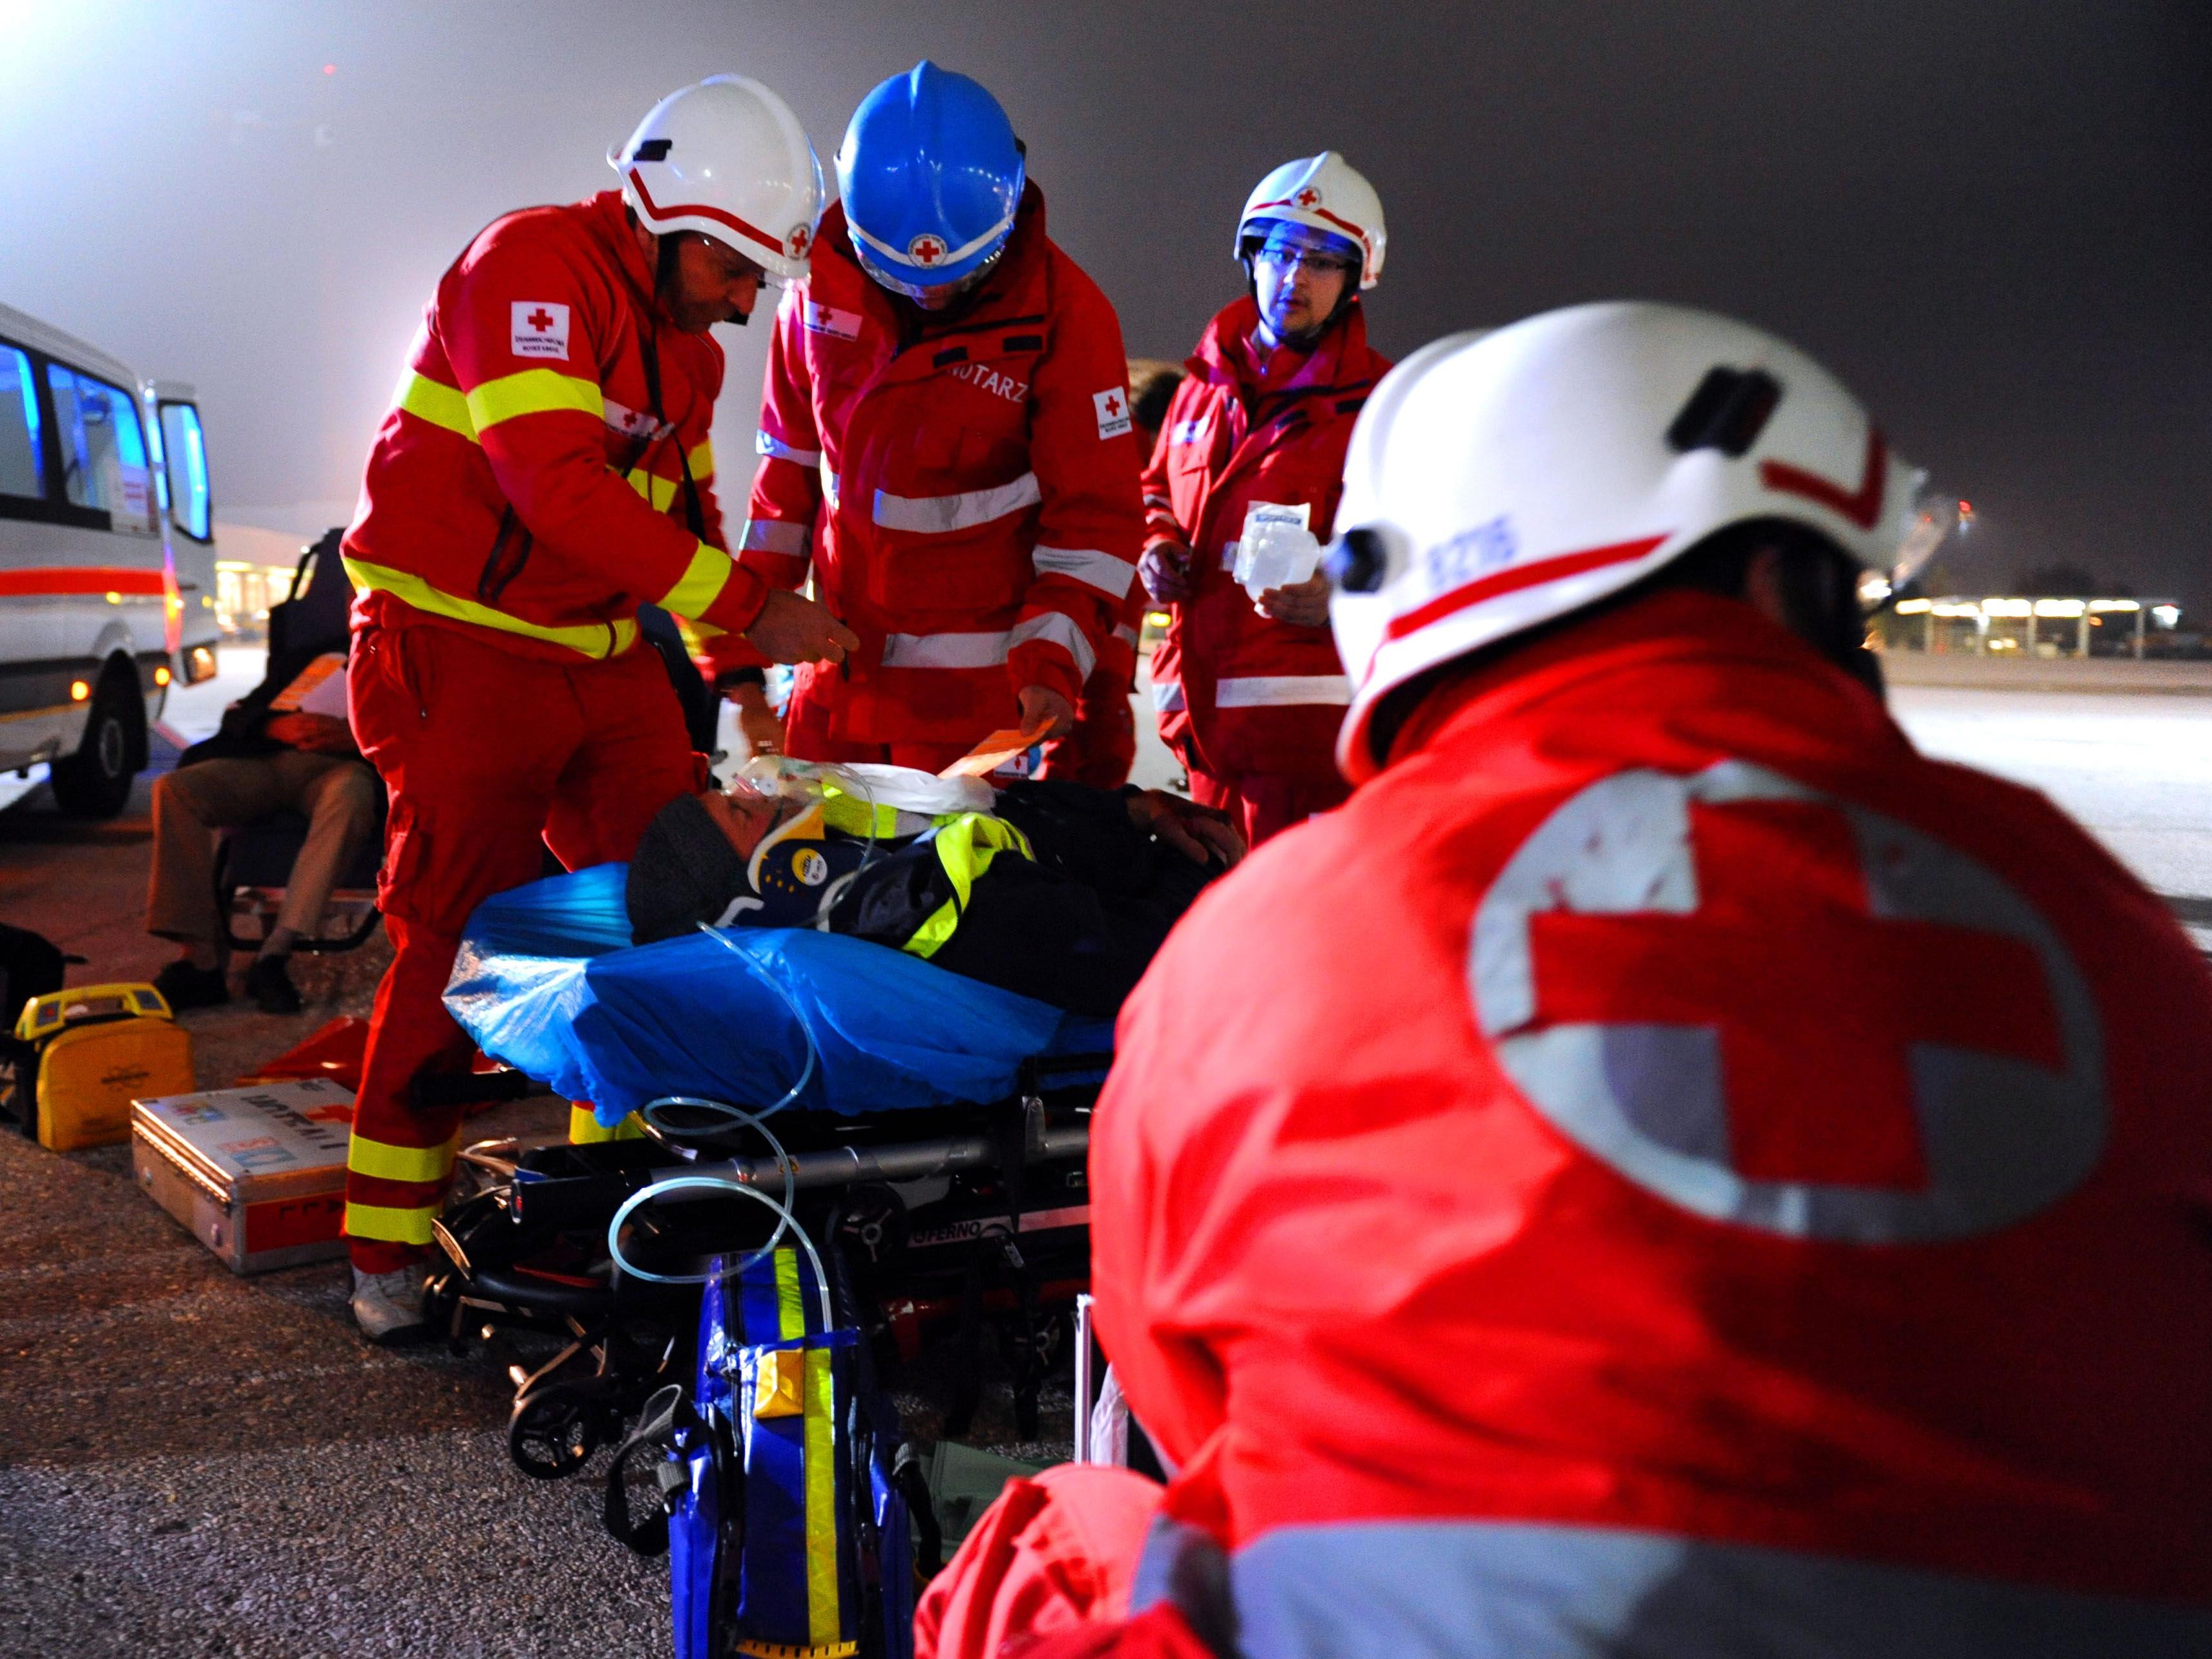 35 Rettungssanitäter des Wiener Roten Kreuzes werden bald gekündigt